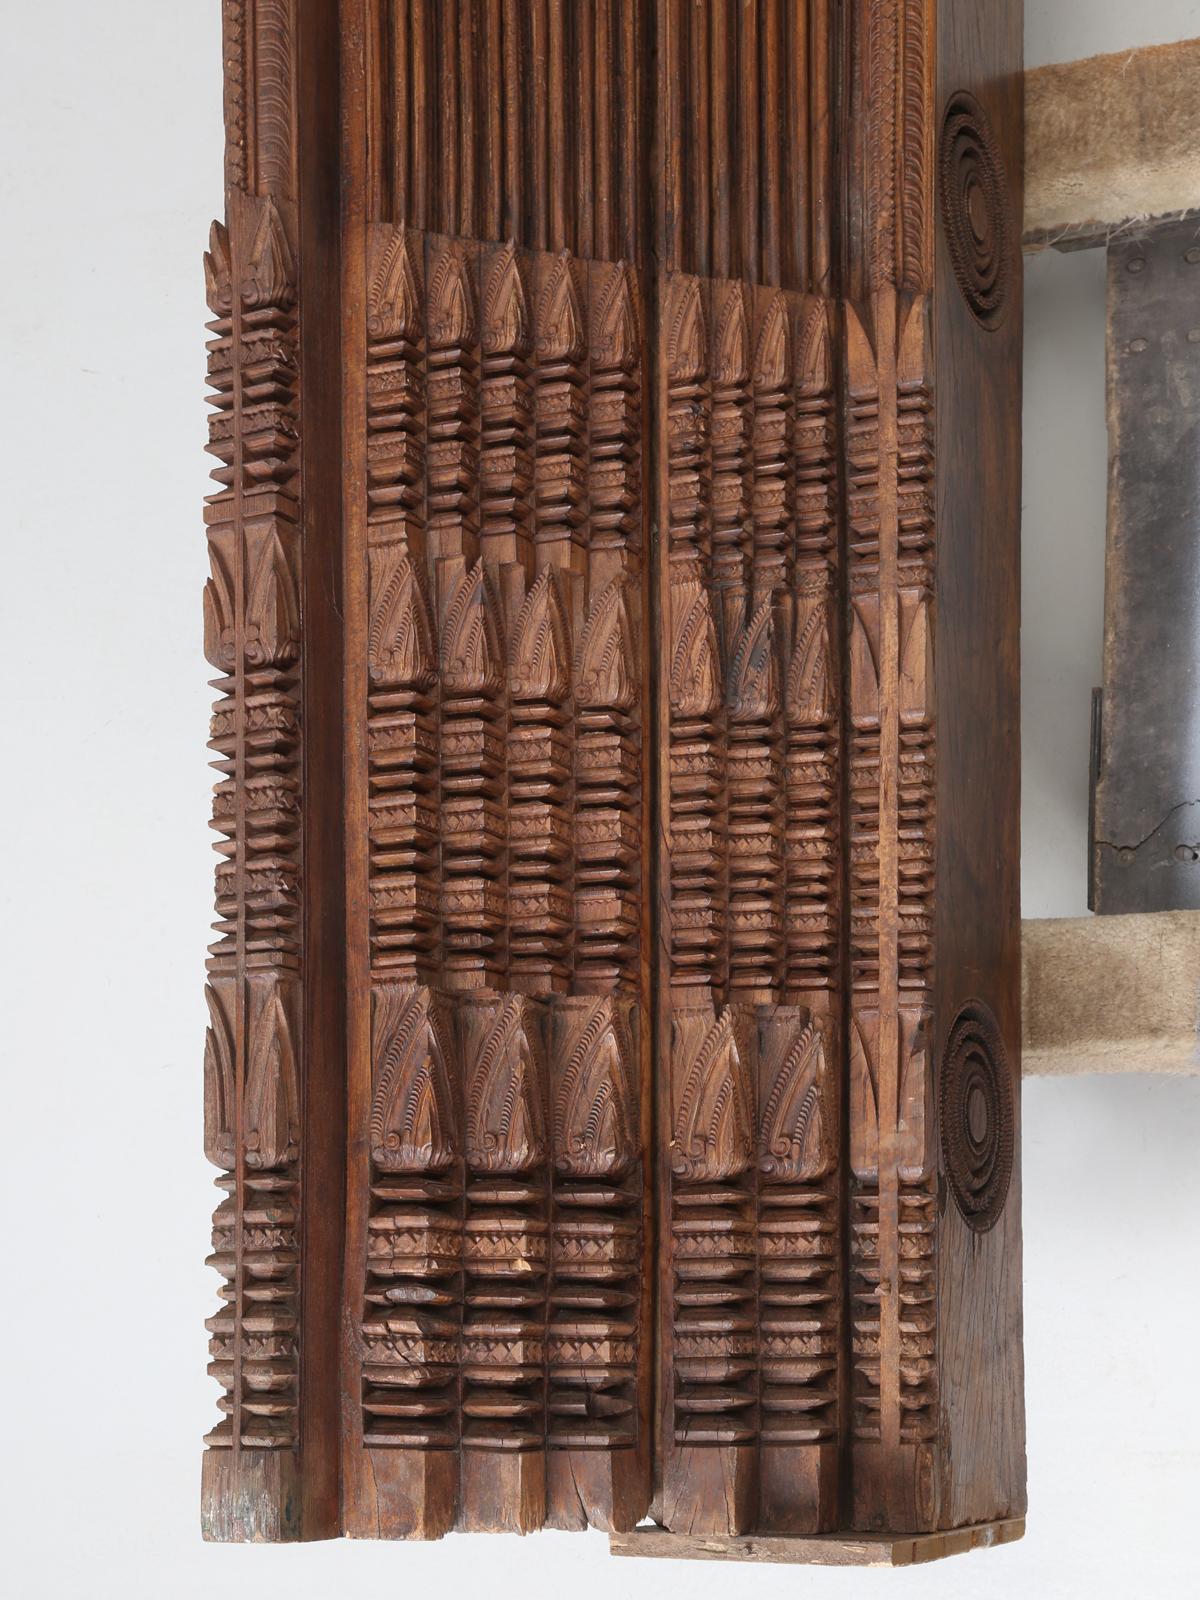 Cadre de porte antique en bois de teck importé d'Inde avec des sculptures absolument magnifiques. Nous venons de recevoir trois encadrements de porte anciens (tous légèrement différents) en bois de teck massif. A en juger par leur poids, on pourrait